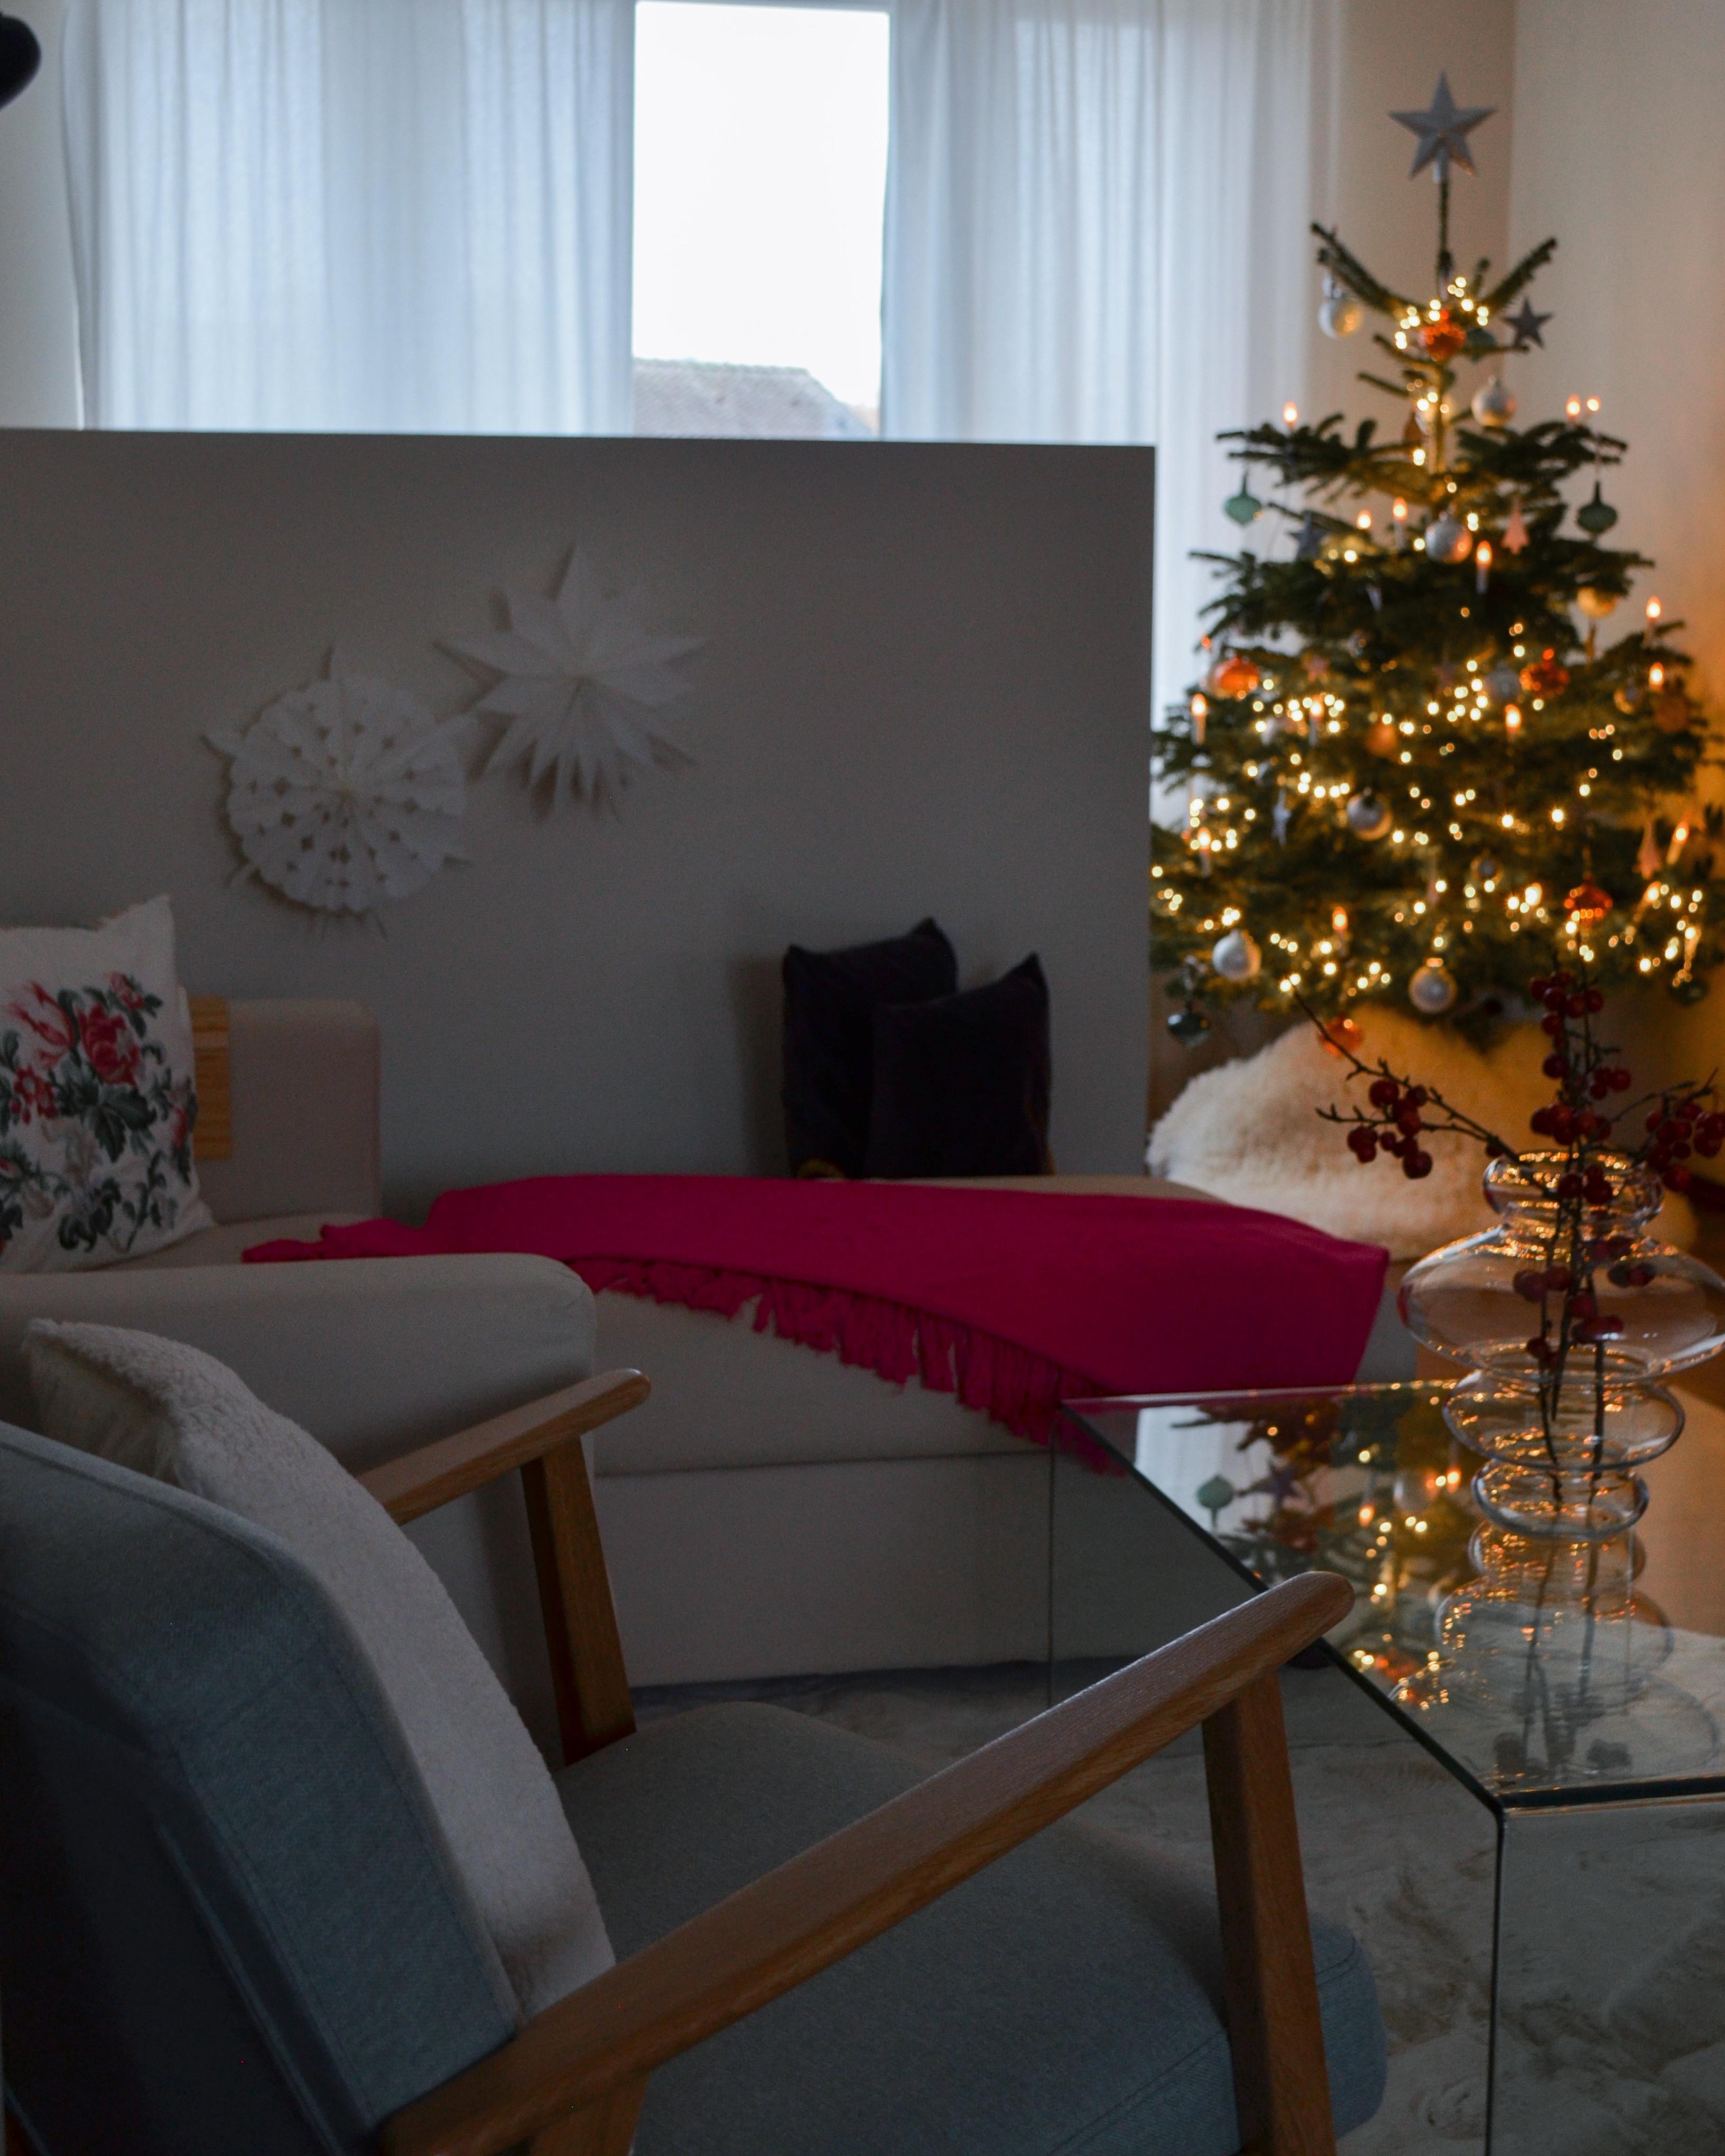 adieu christmas🎄
#home#interior#colorpop#beigeinterior#interiordesign#couchstyle#altbau#christmas#winter#livingroom